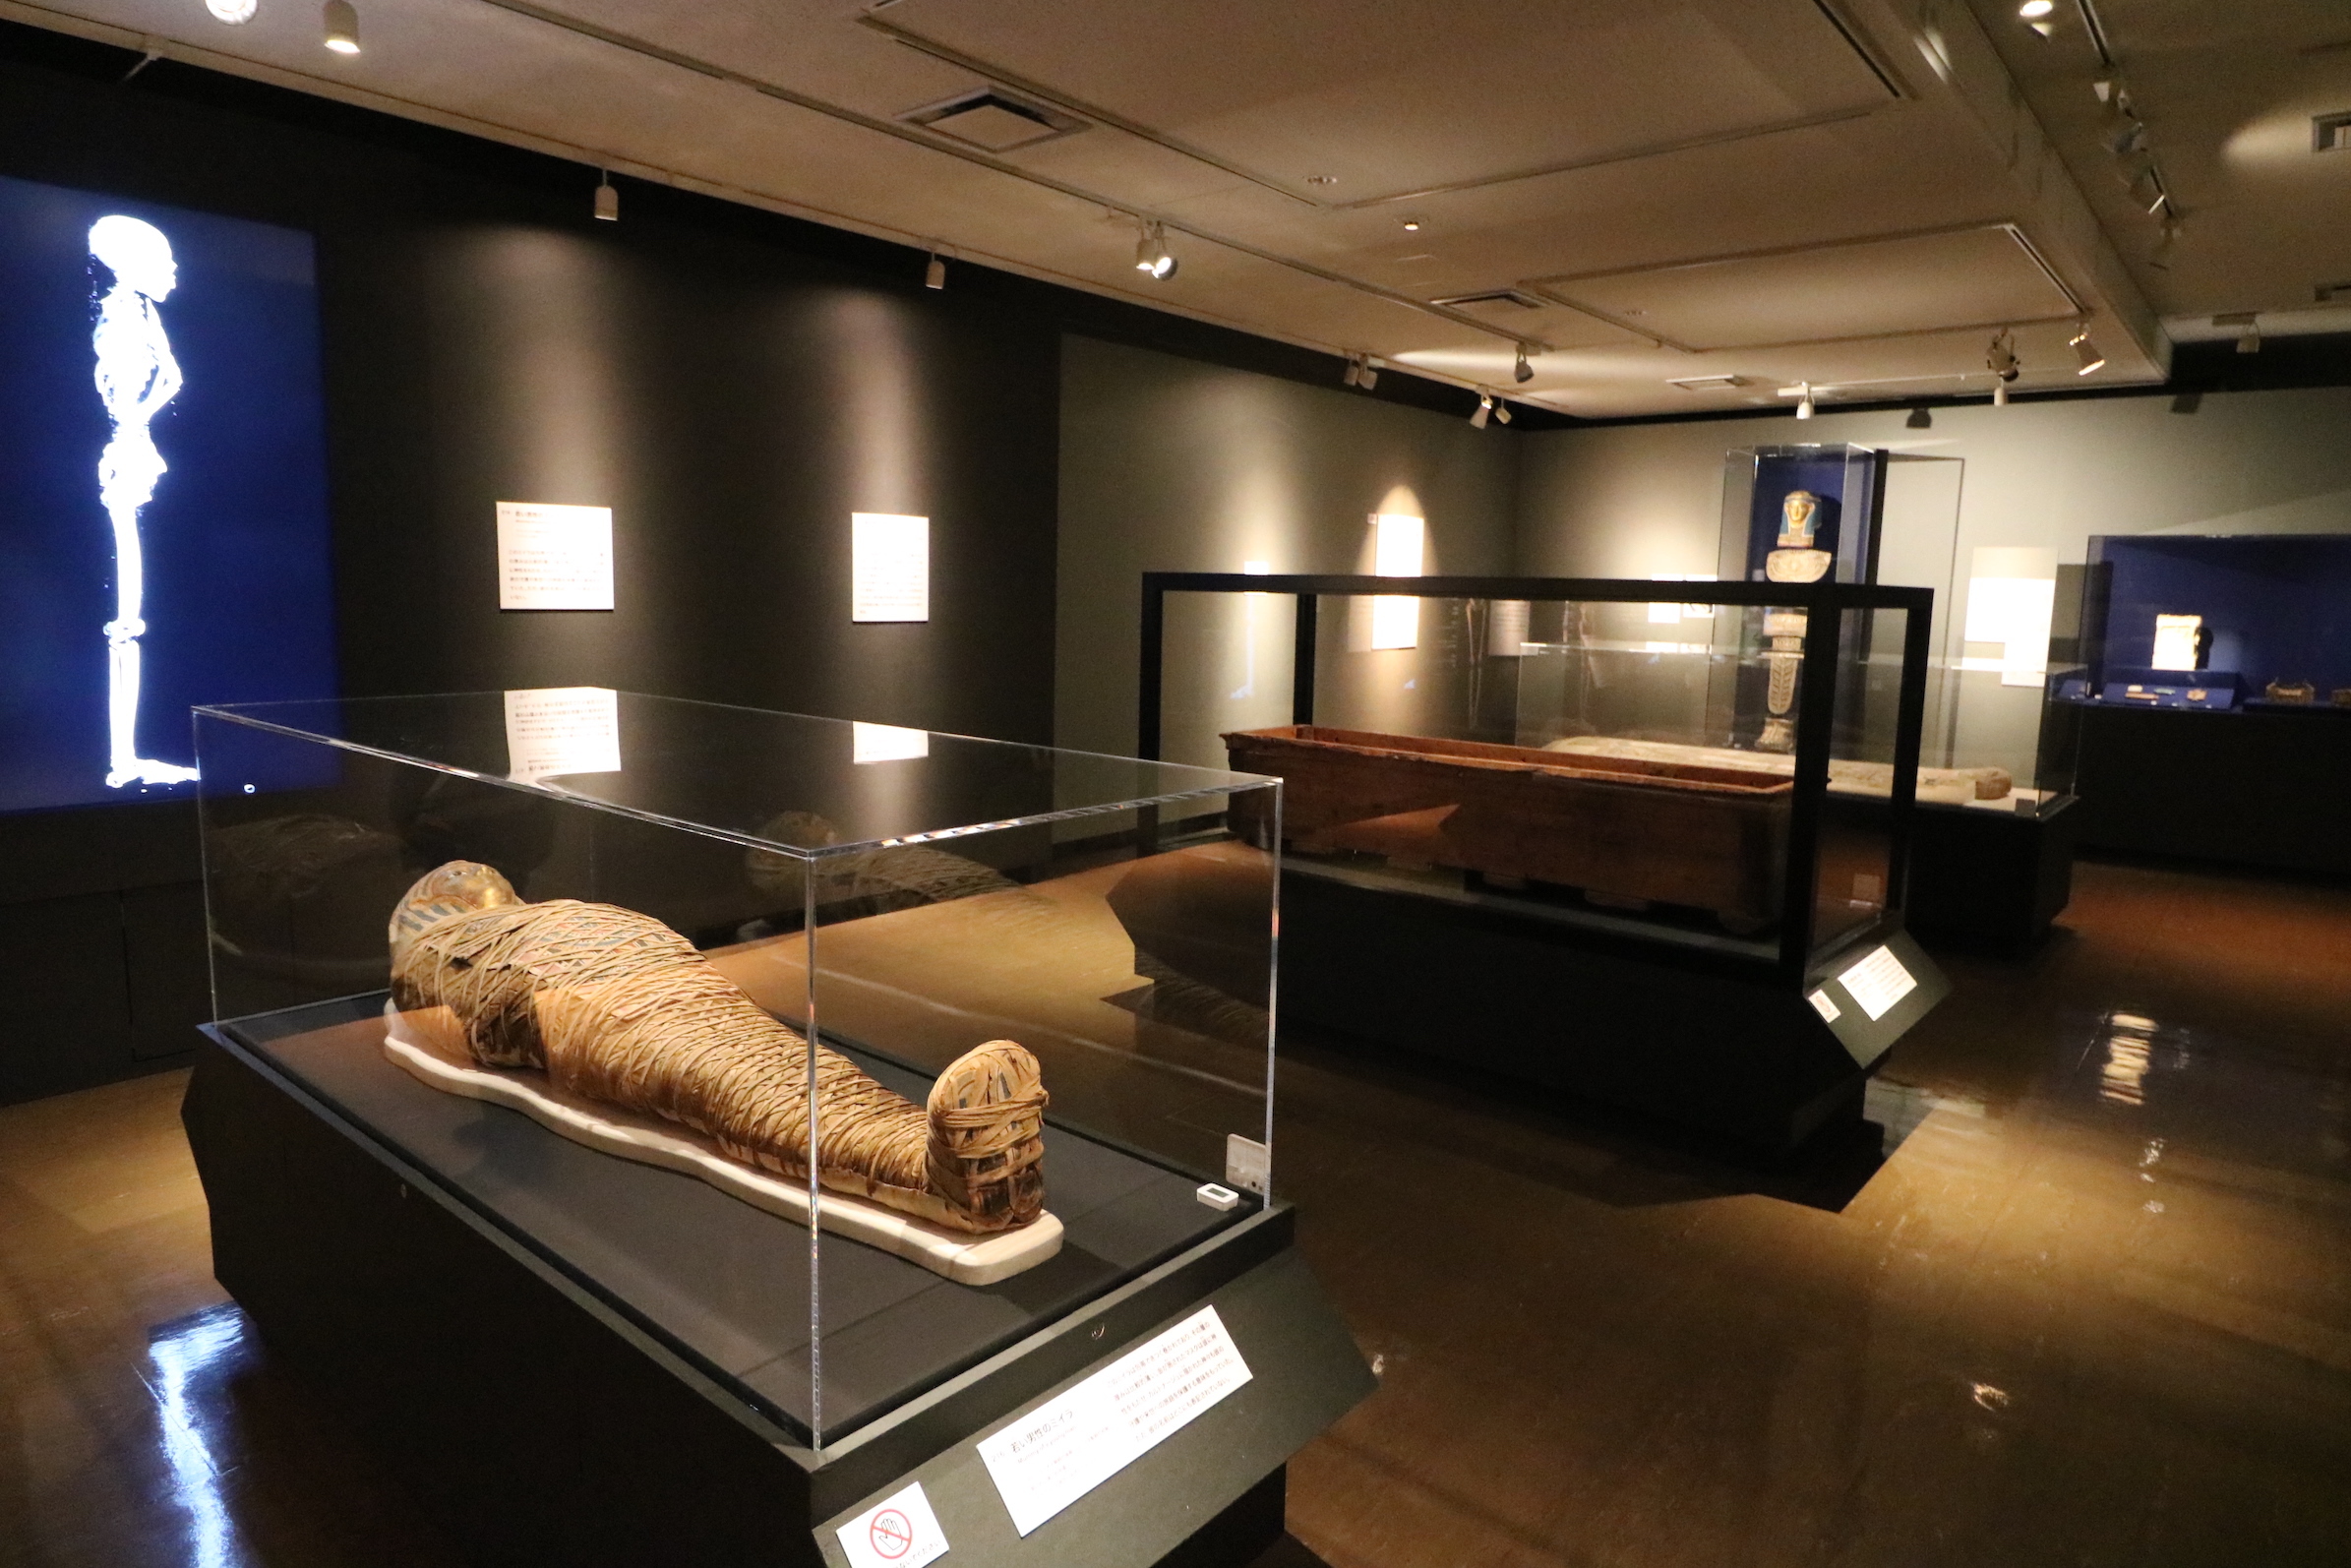 『大英博物館ミイラ展』で6体のミイラが語る古代エジプトの歴史と文化、河合望教授に訊く特別展の見どころ解説第2弾 | SPICE - エンタメ